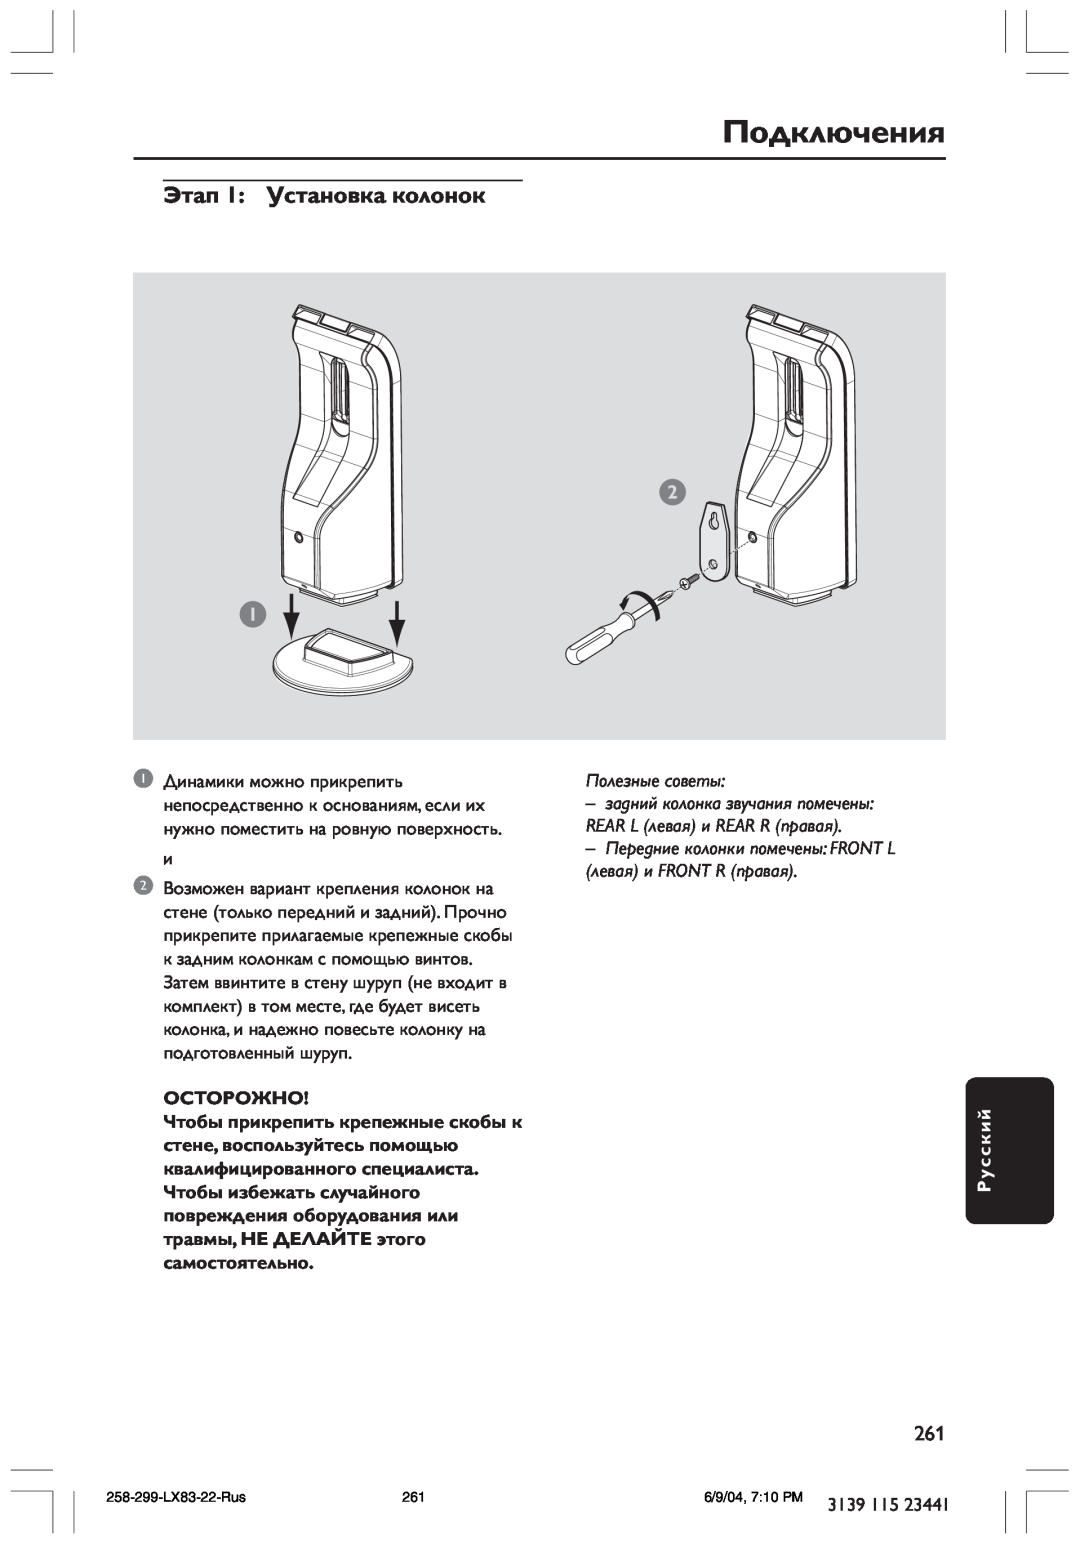 Philips LX8300SA user manual Подключения, Этап 1 Установка колонок, Осторожно, Полезные советы, Русский 